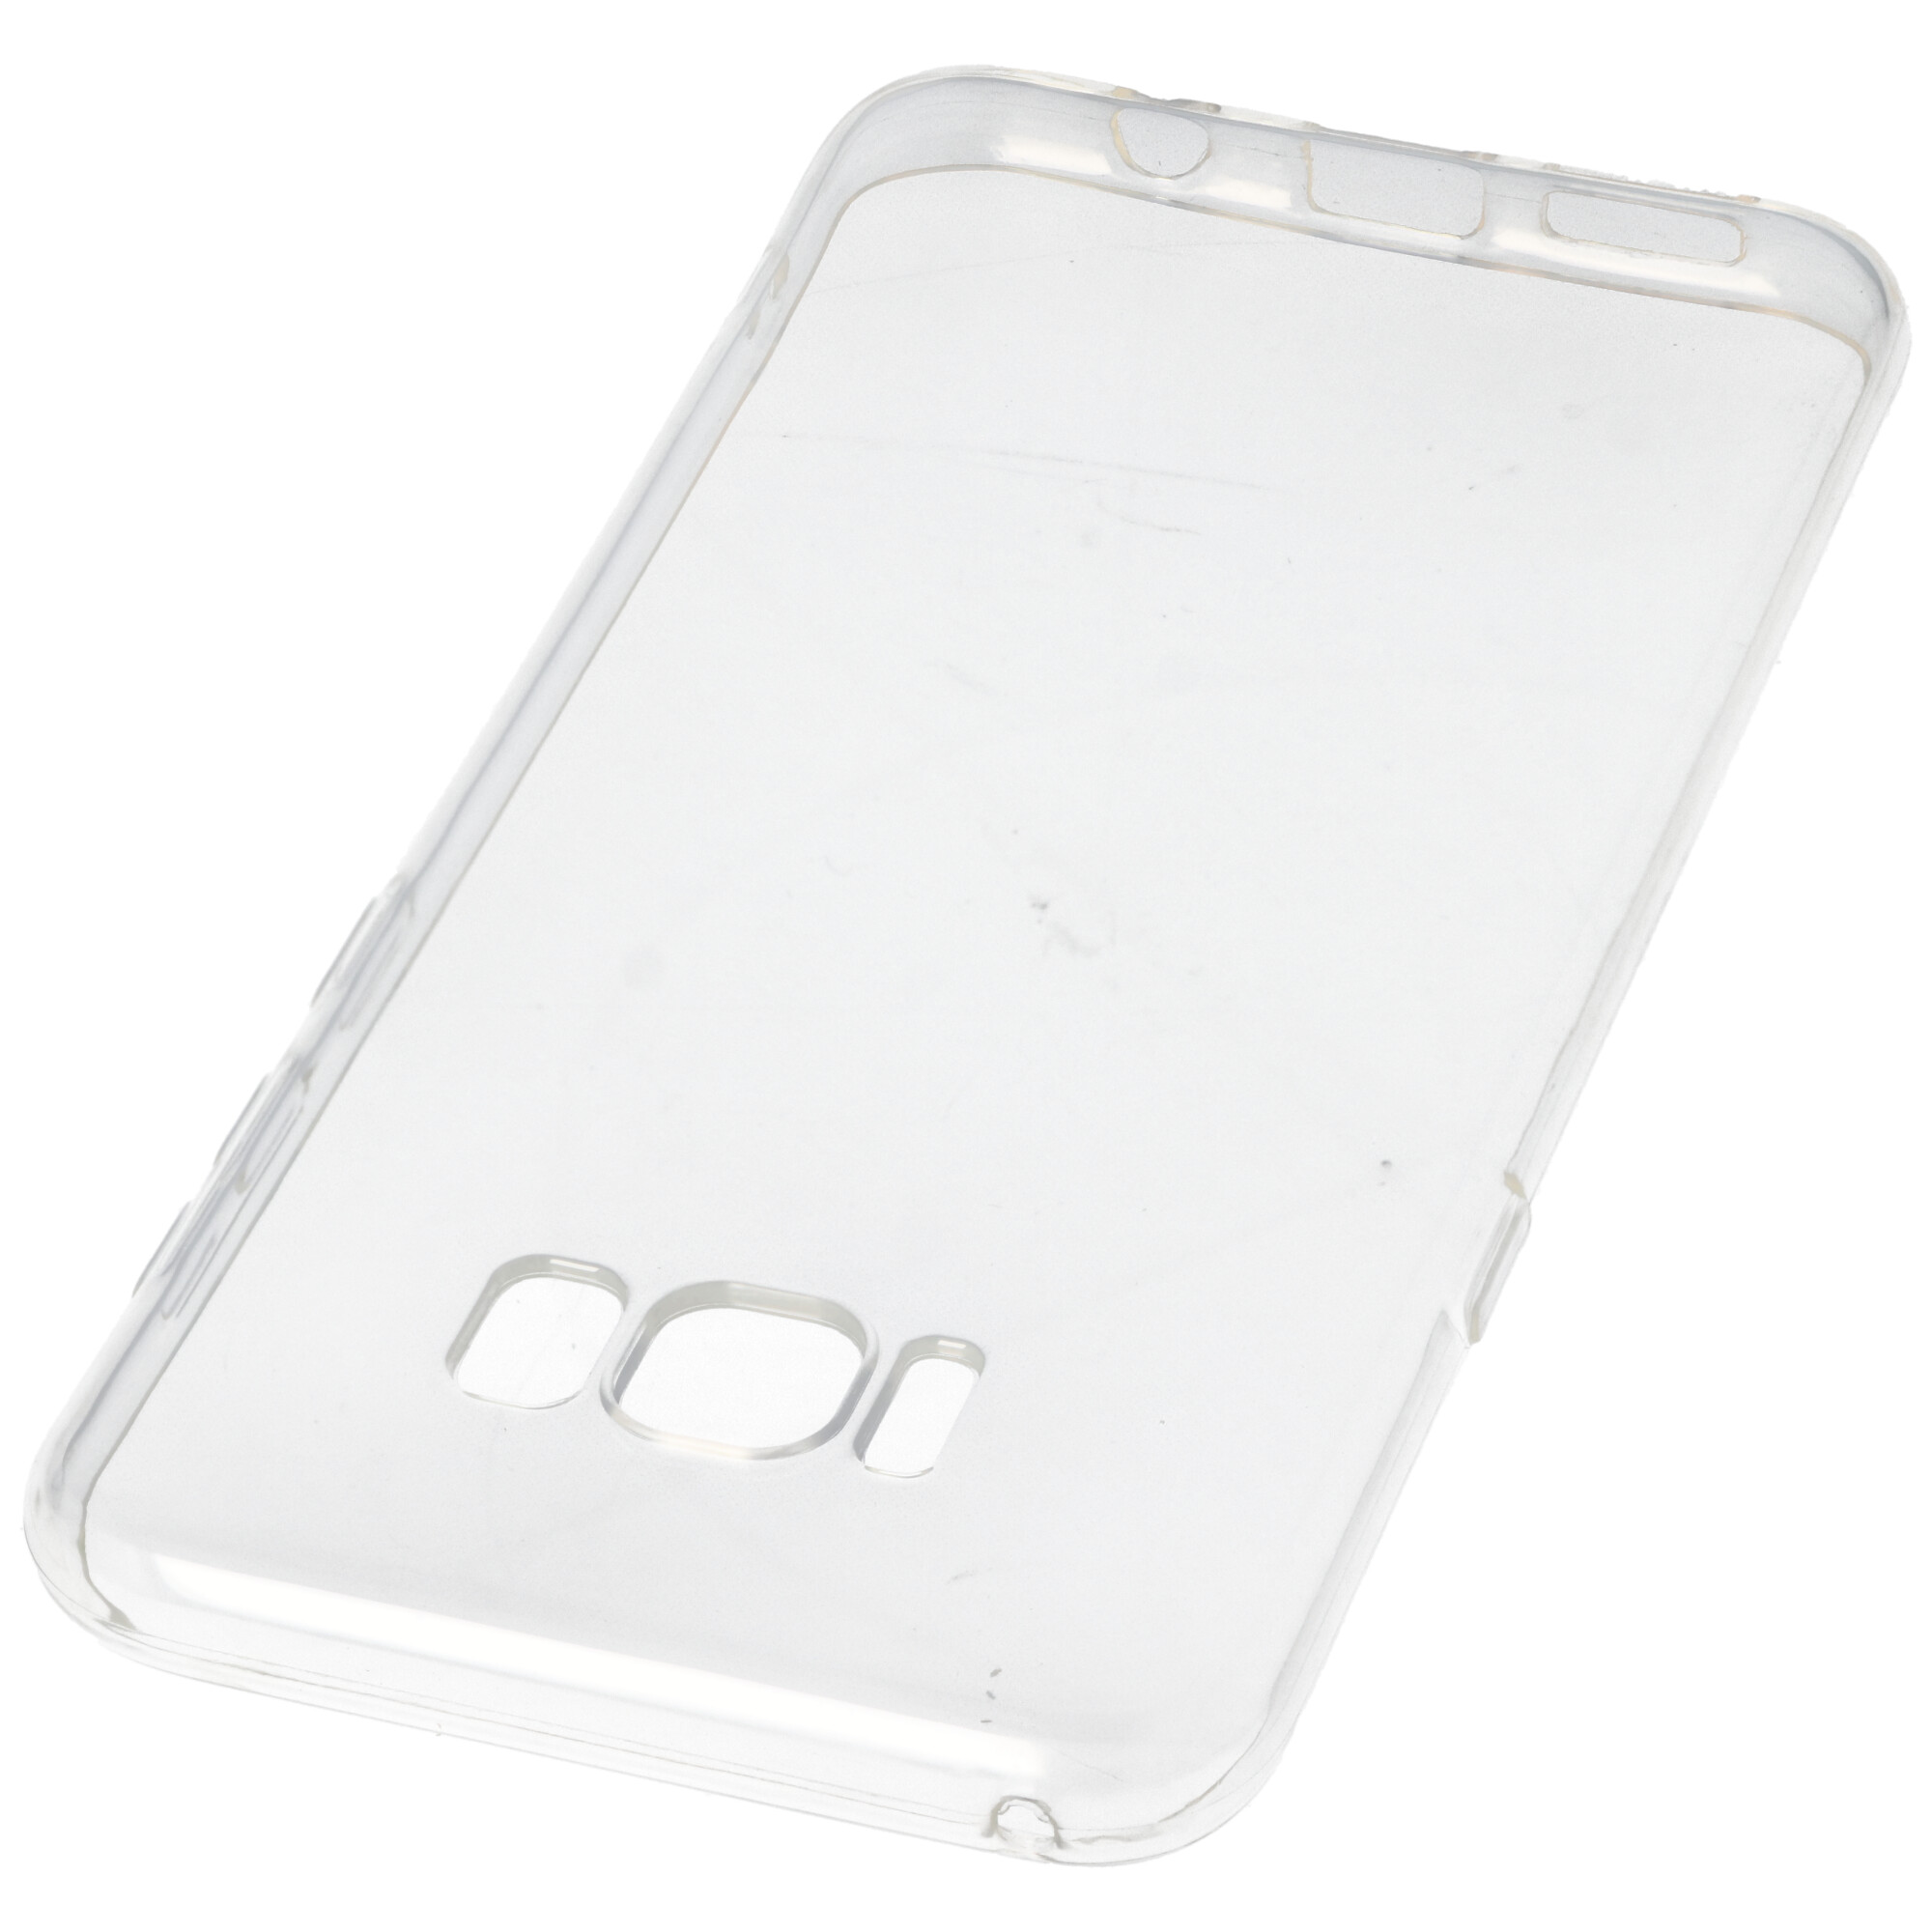 Hülle passend für Samsung Galaxy S8 Plus - transparente Schutzhülle, Anti-Gelb Luftkissen Fallschutz Silikon Handyhülle robustes TPU Case